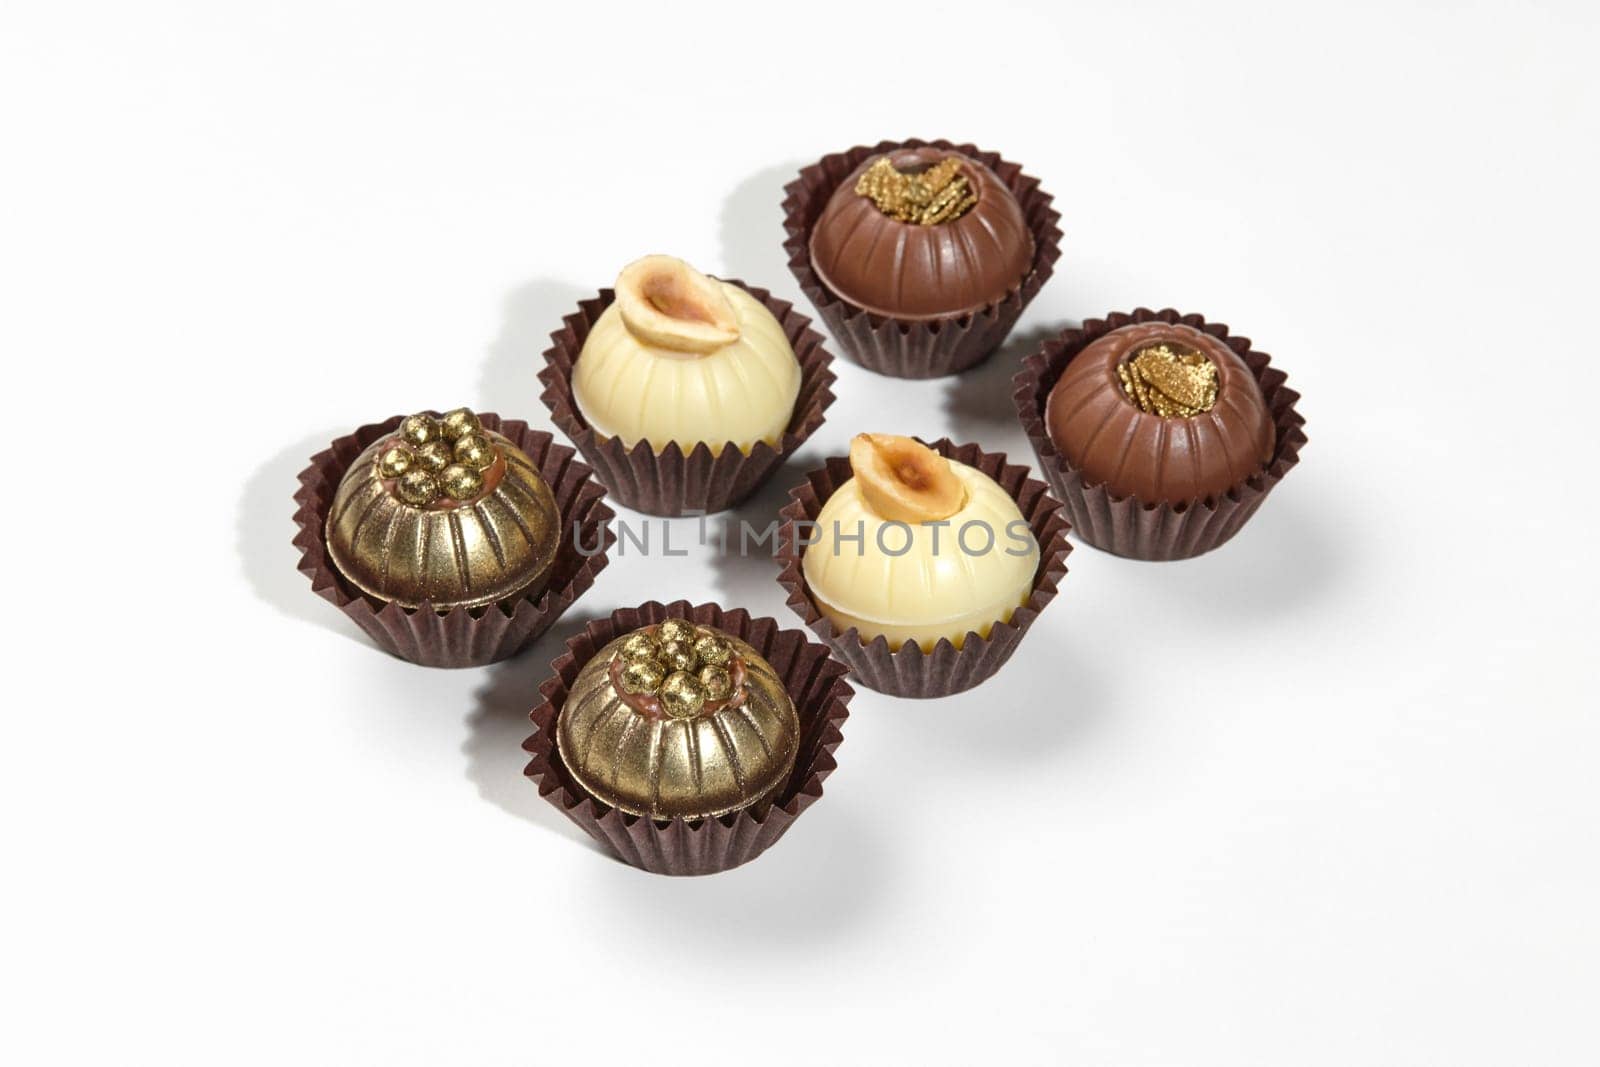 Assorted designer exquisite chocolate candies on white background by nazarovsergey